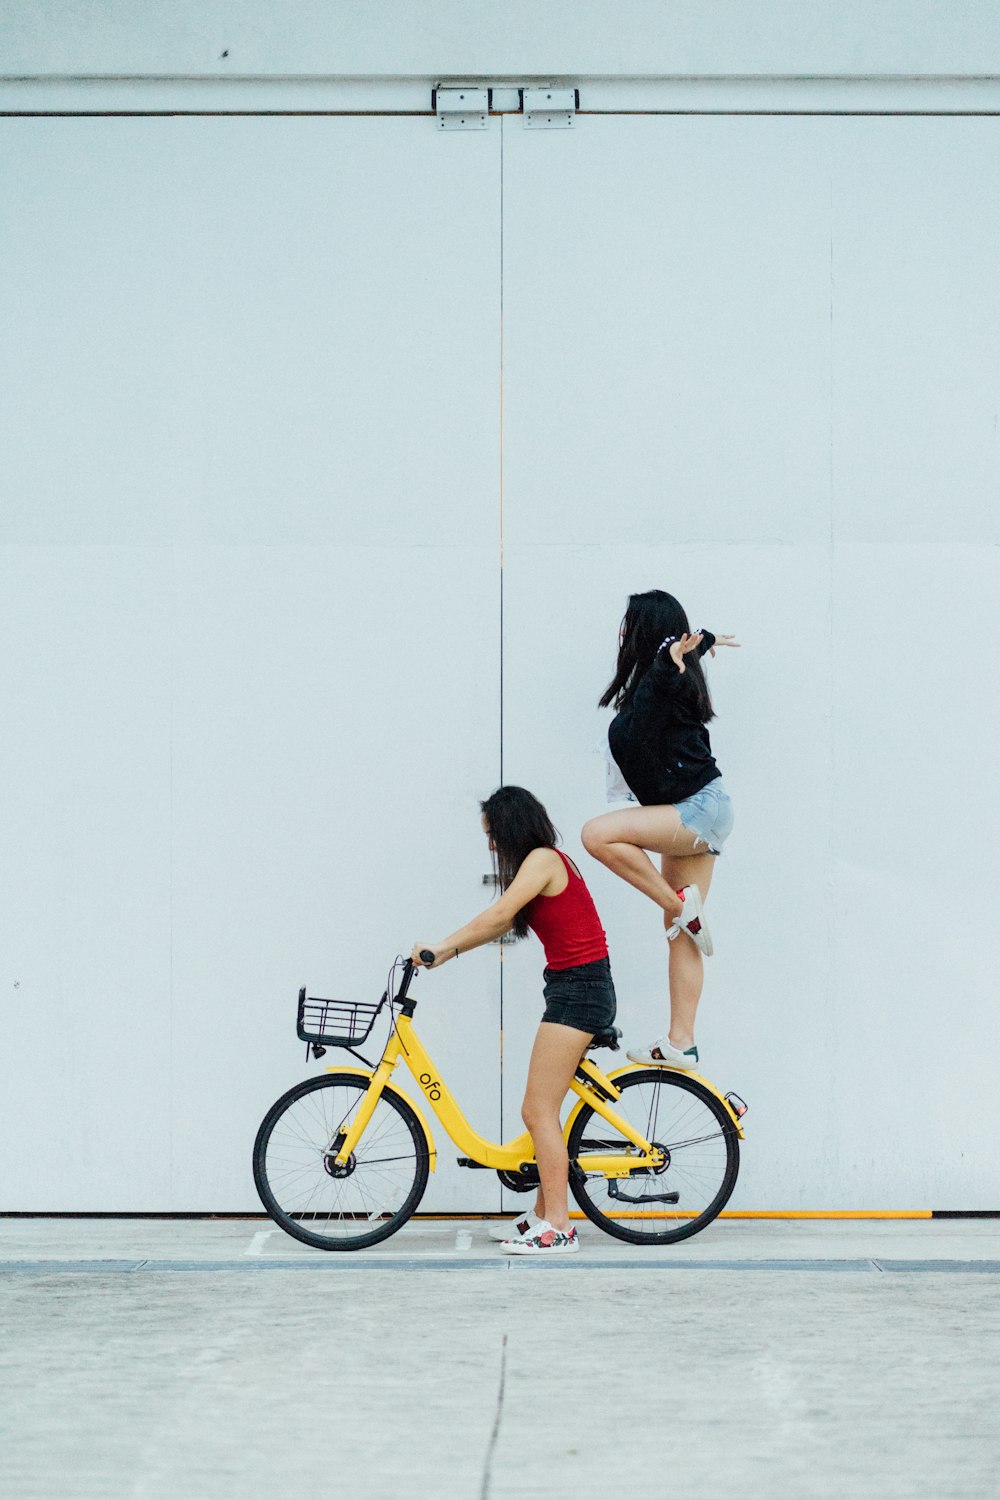 壁近くのリアフェンダーに立っている別の女性と自転車に乗っている女性